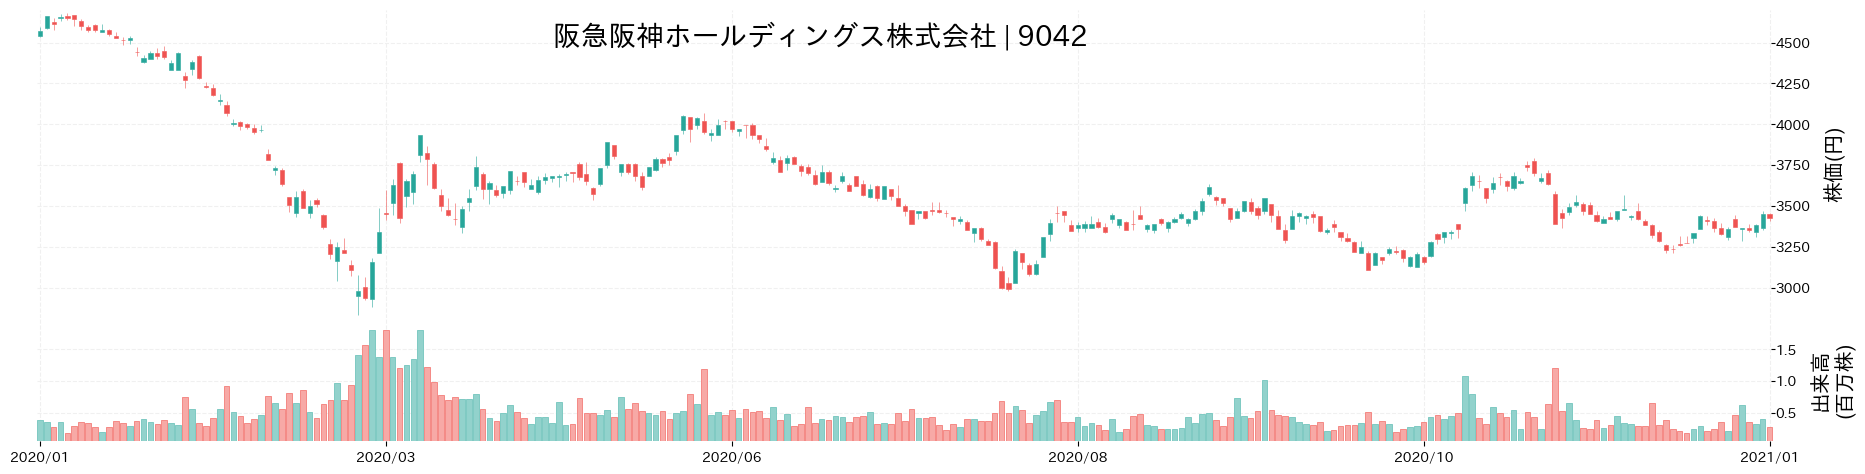 阪急阪神ホールディングスの株価推移(2020)